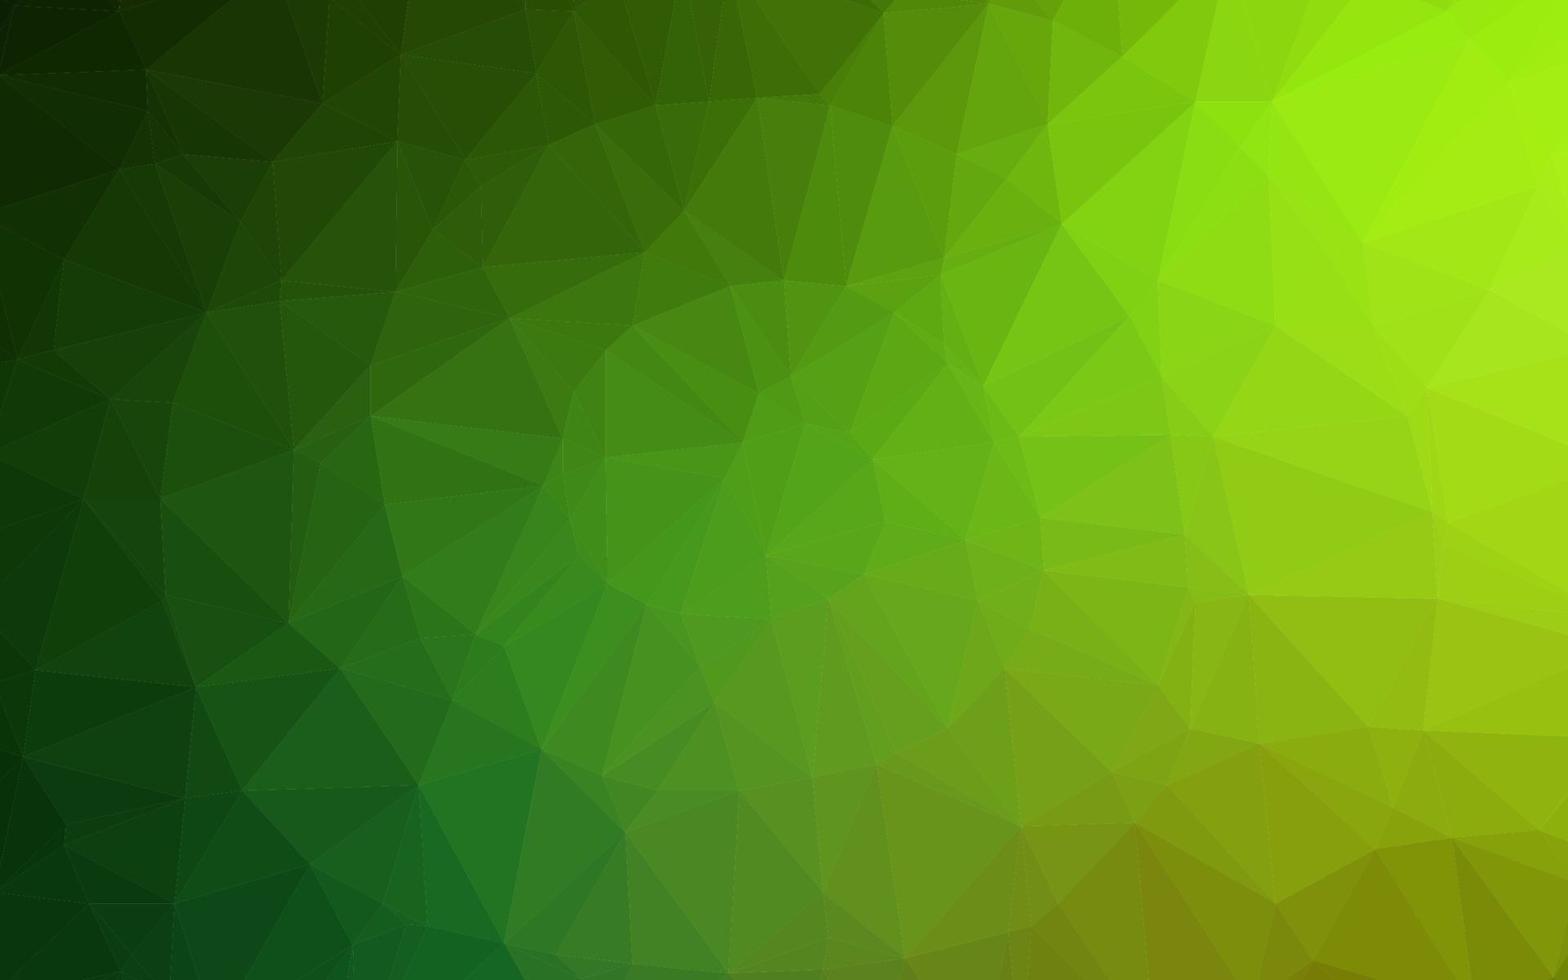 Light Green vector shining triangular pattern. 3200563 Vector Art at ...